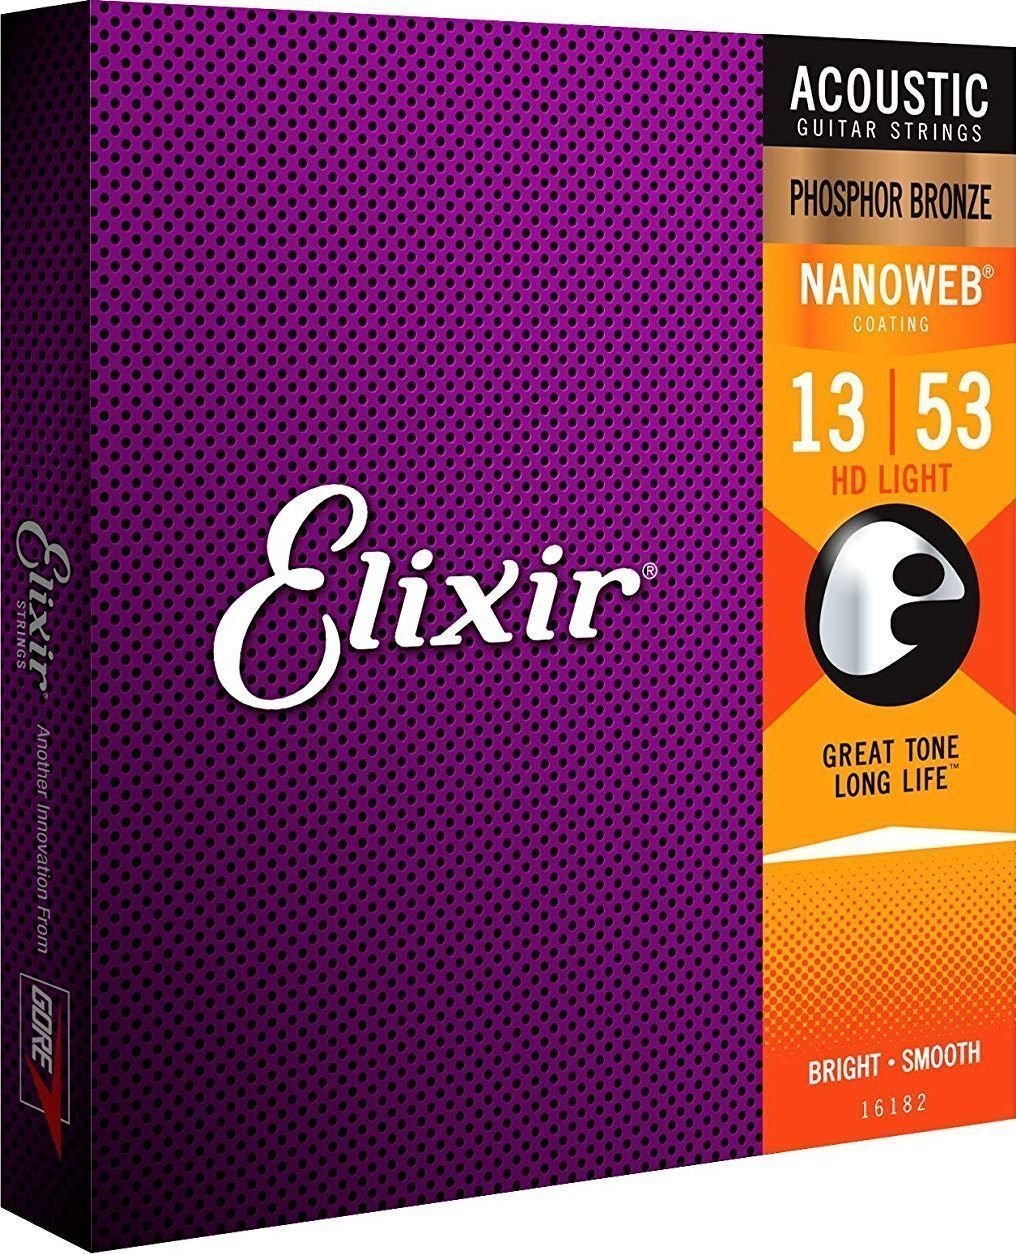 Akusztikus gitárhúrok Elixir 16182 Nanoweb 13-53